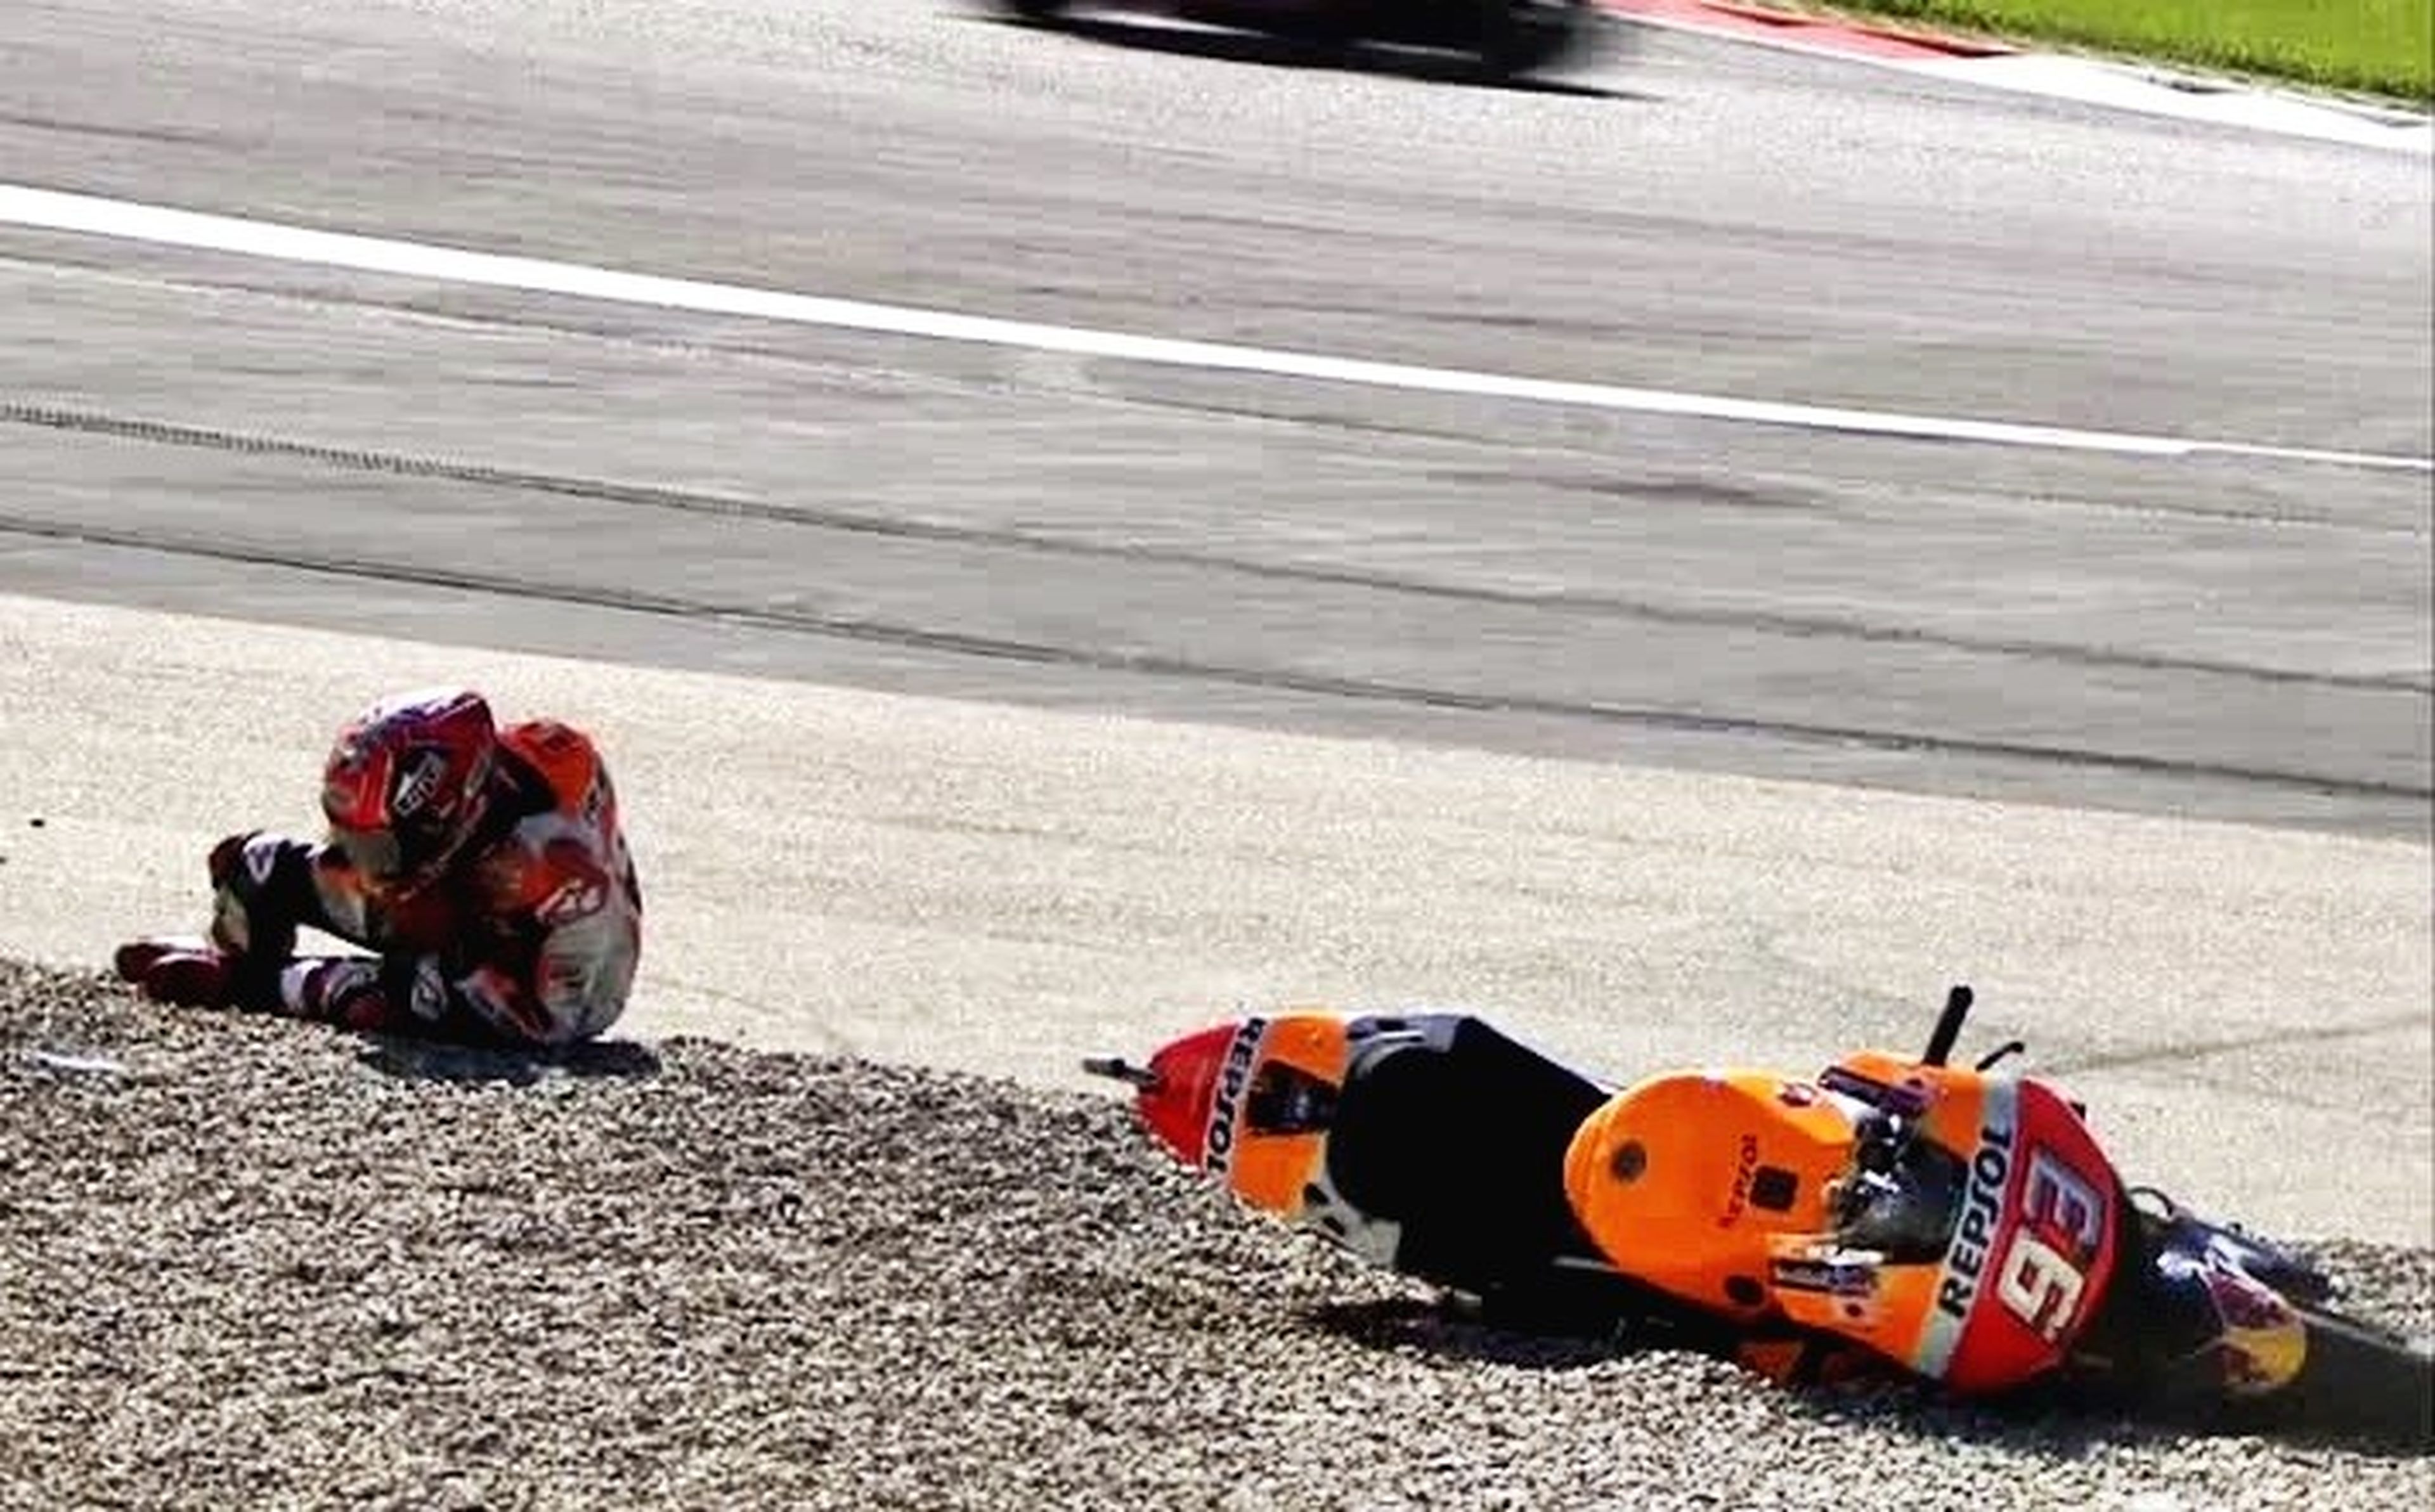 Sustazo para Marc Márquez en el FP3 de MotoGP